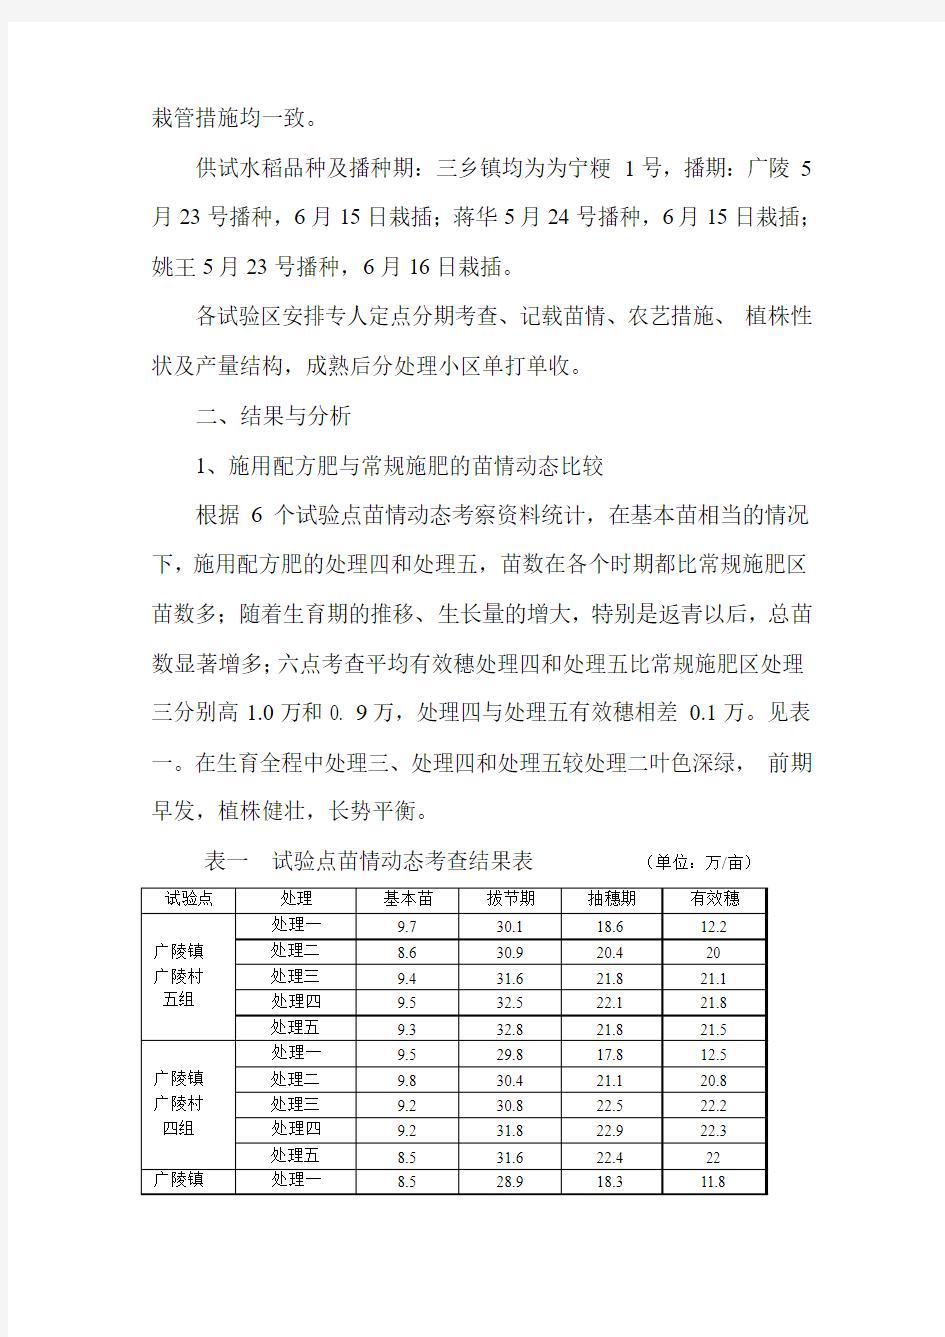 2007泰兴市水稻示范对比及配方肥肥效校正试验总结